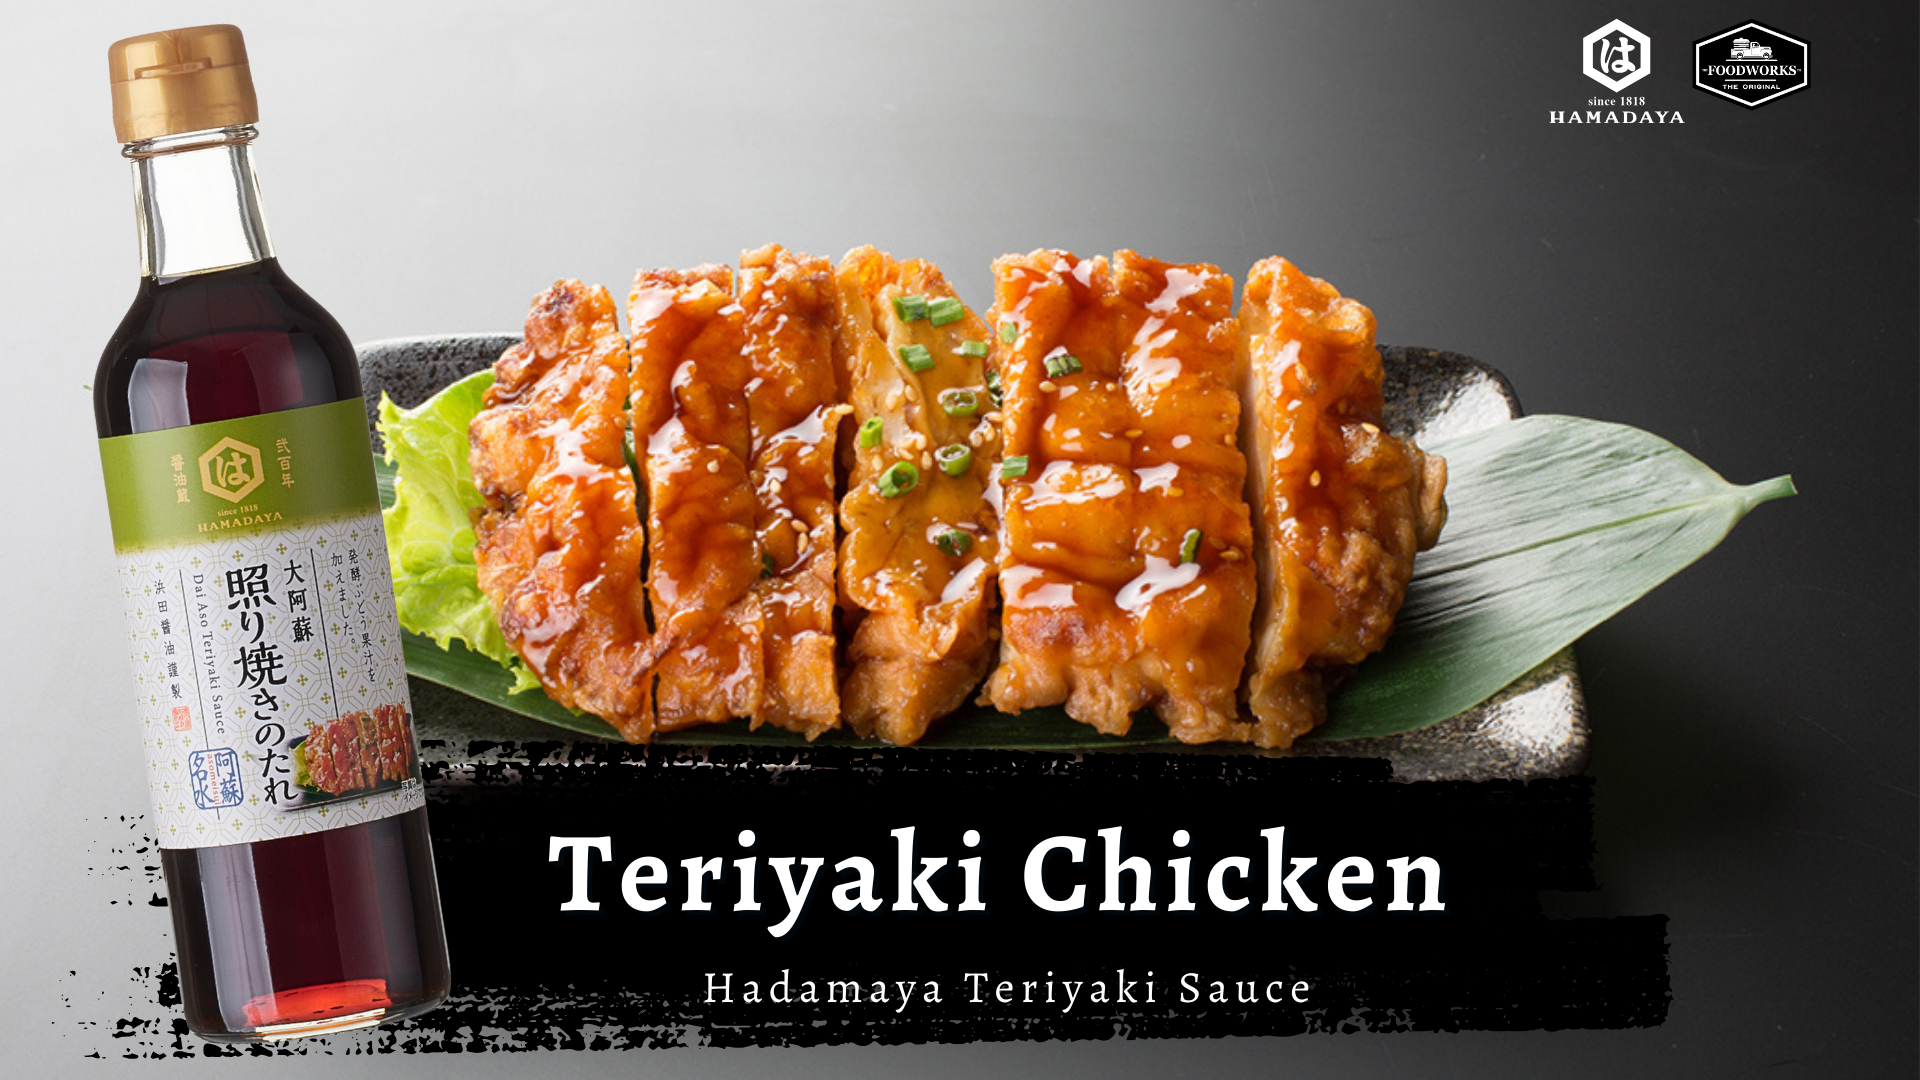 วิธีทำไก่เทริยากิสูตรคิวชู (Teriyaki Chicken)